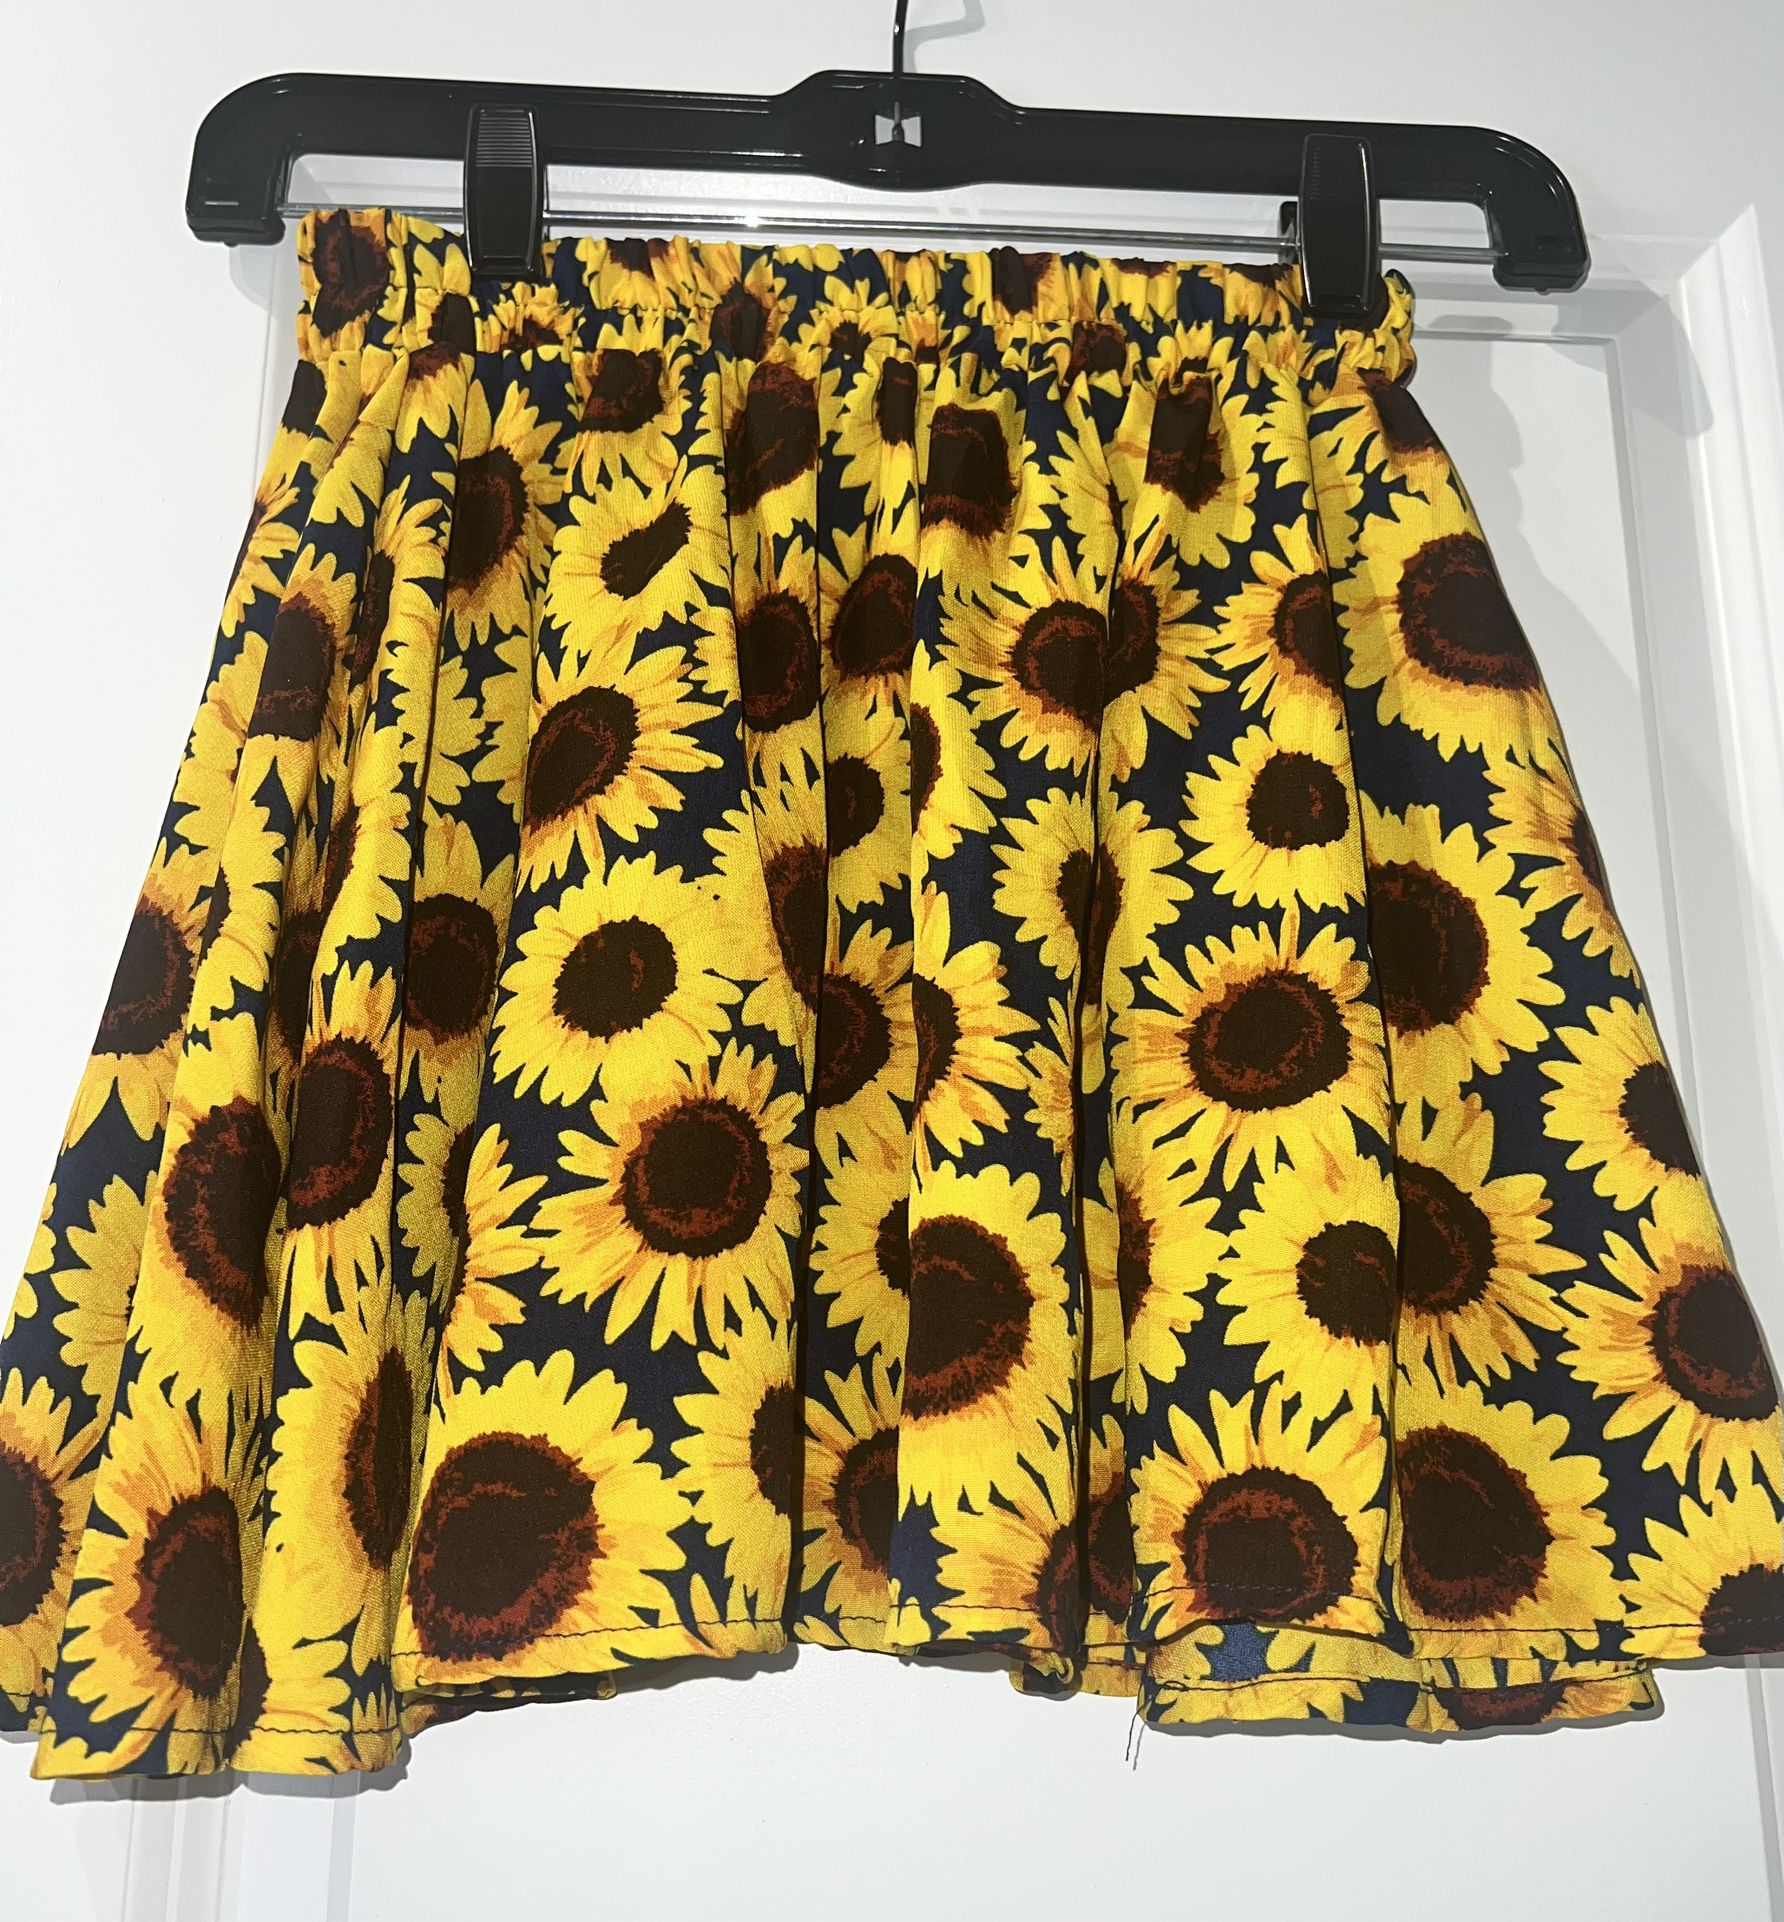 Sunflower skirt / halter top